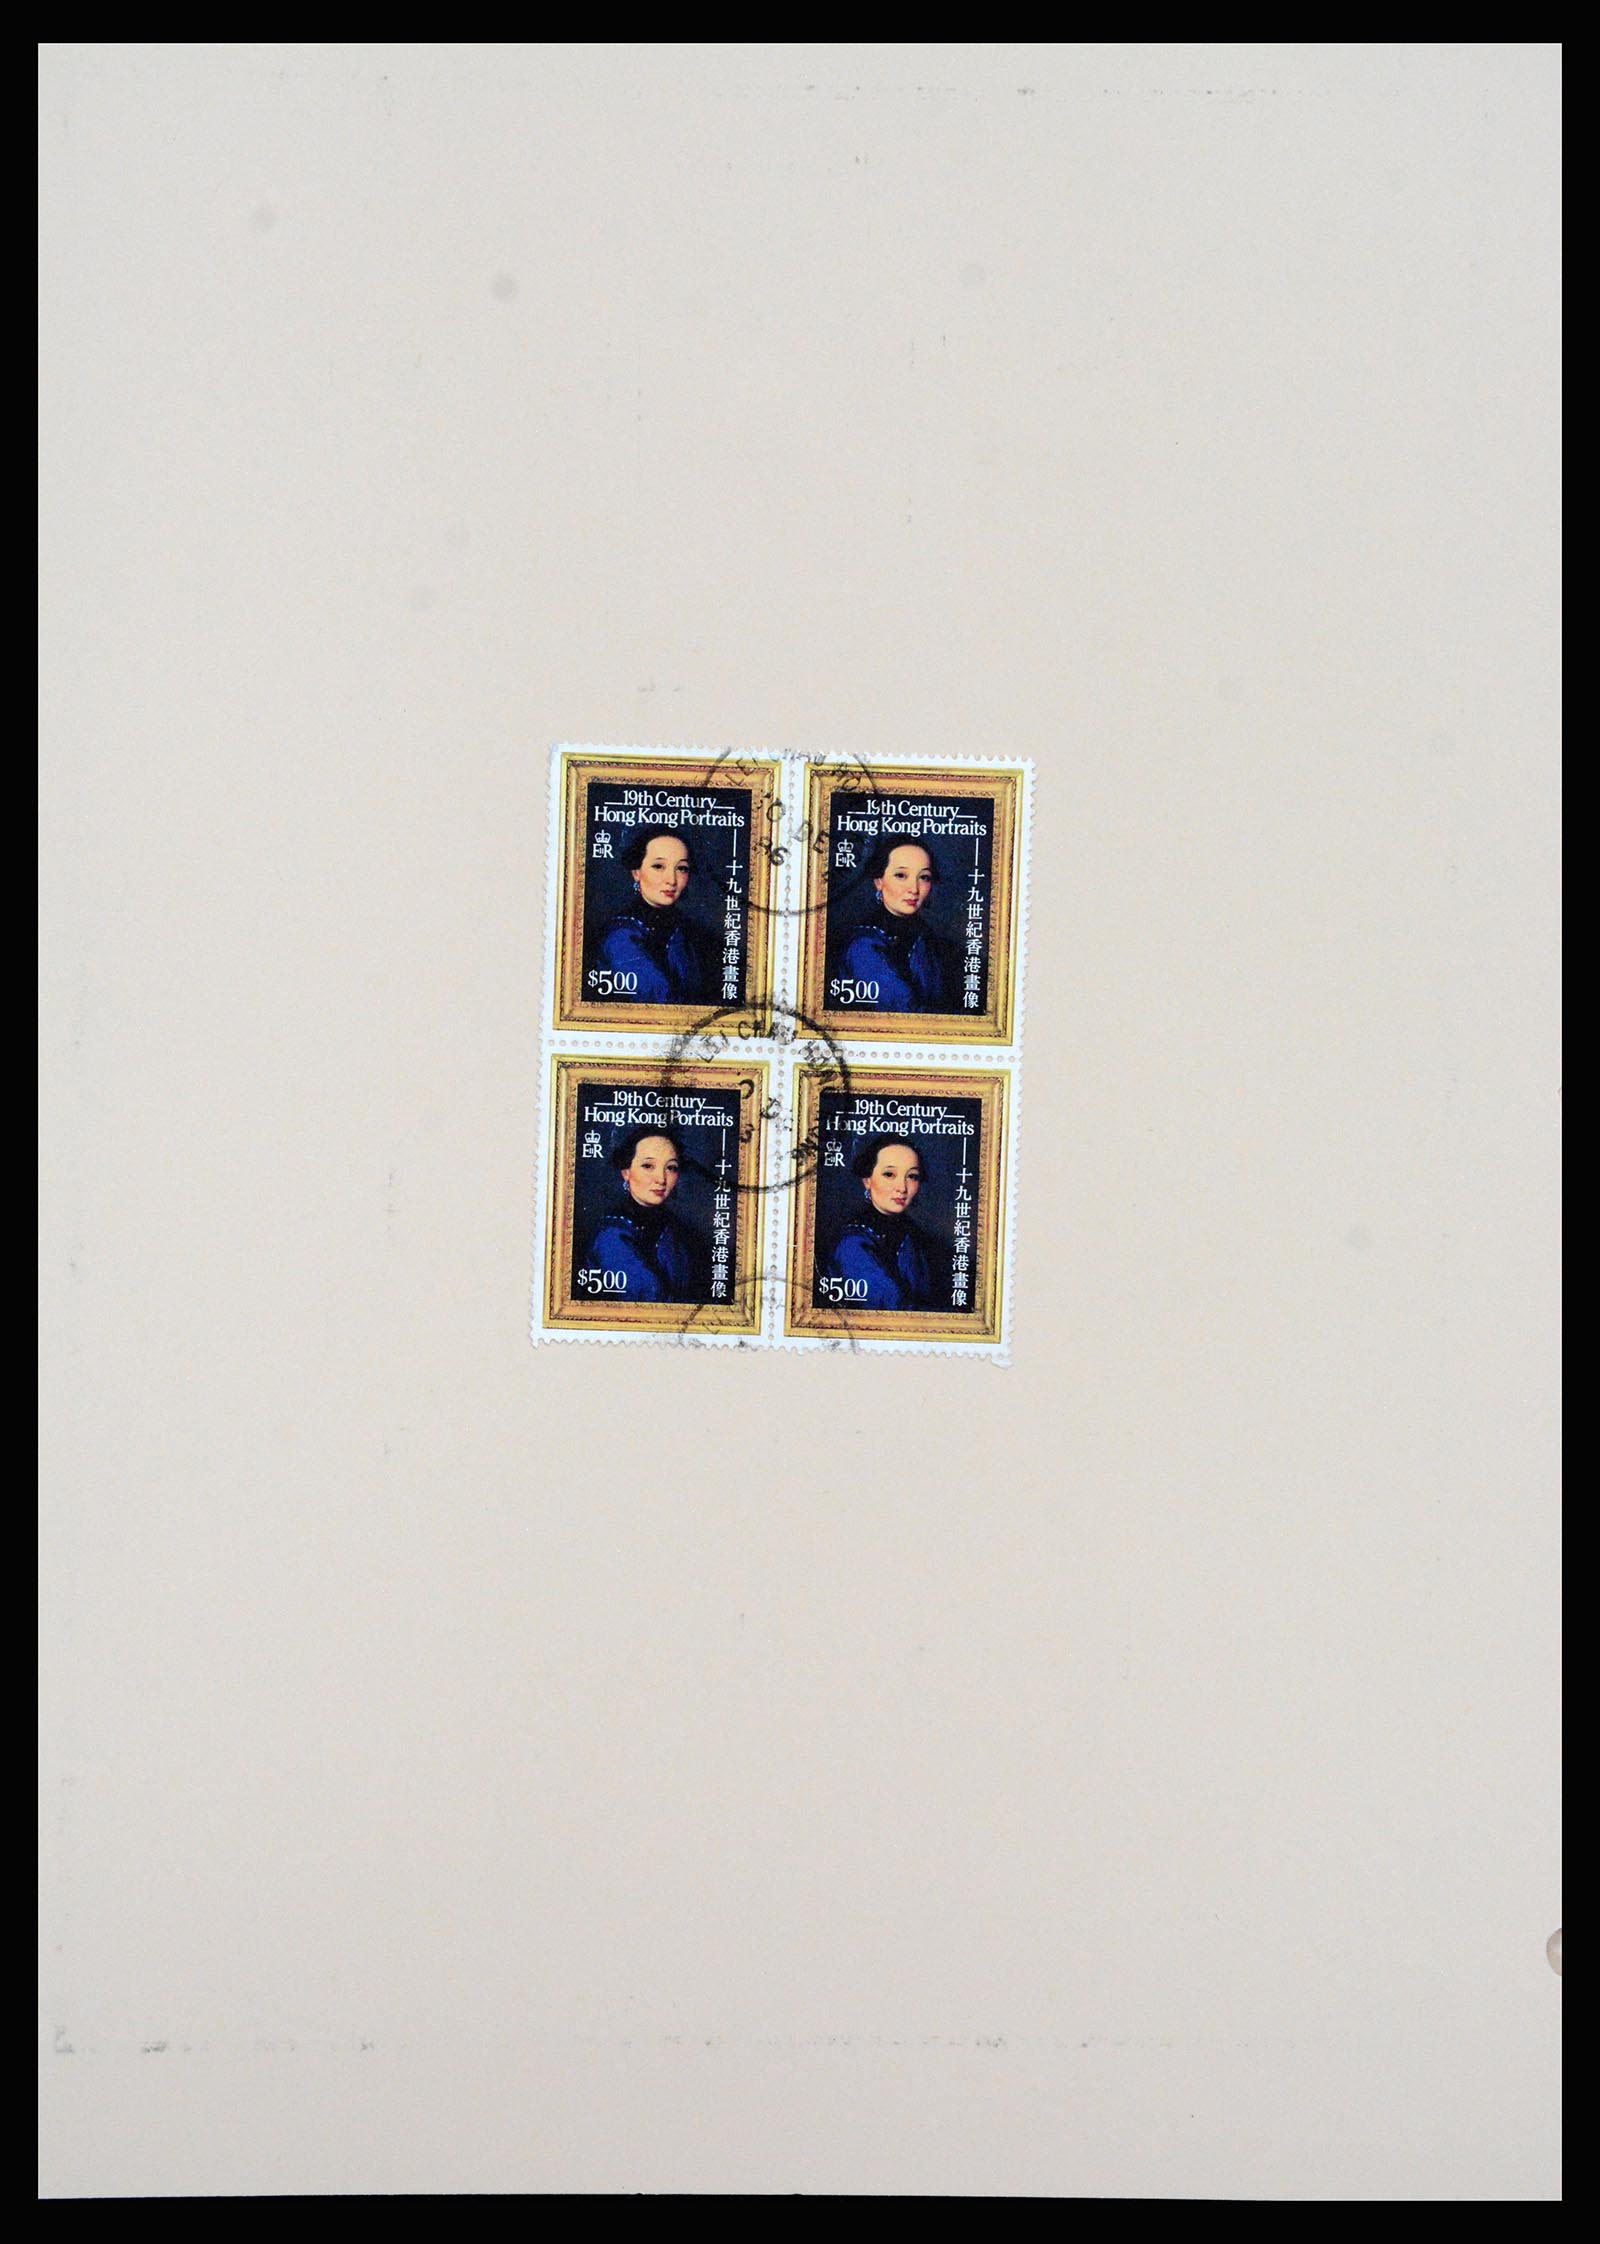 37210 057 - Stamp collection 37210 Hong Kong 1862-2000.